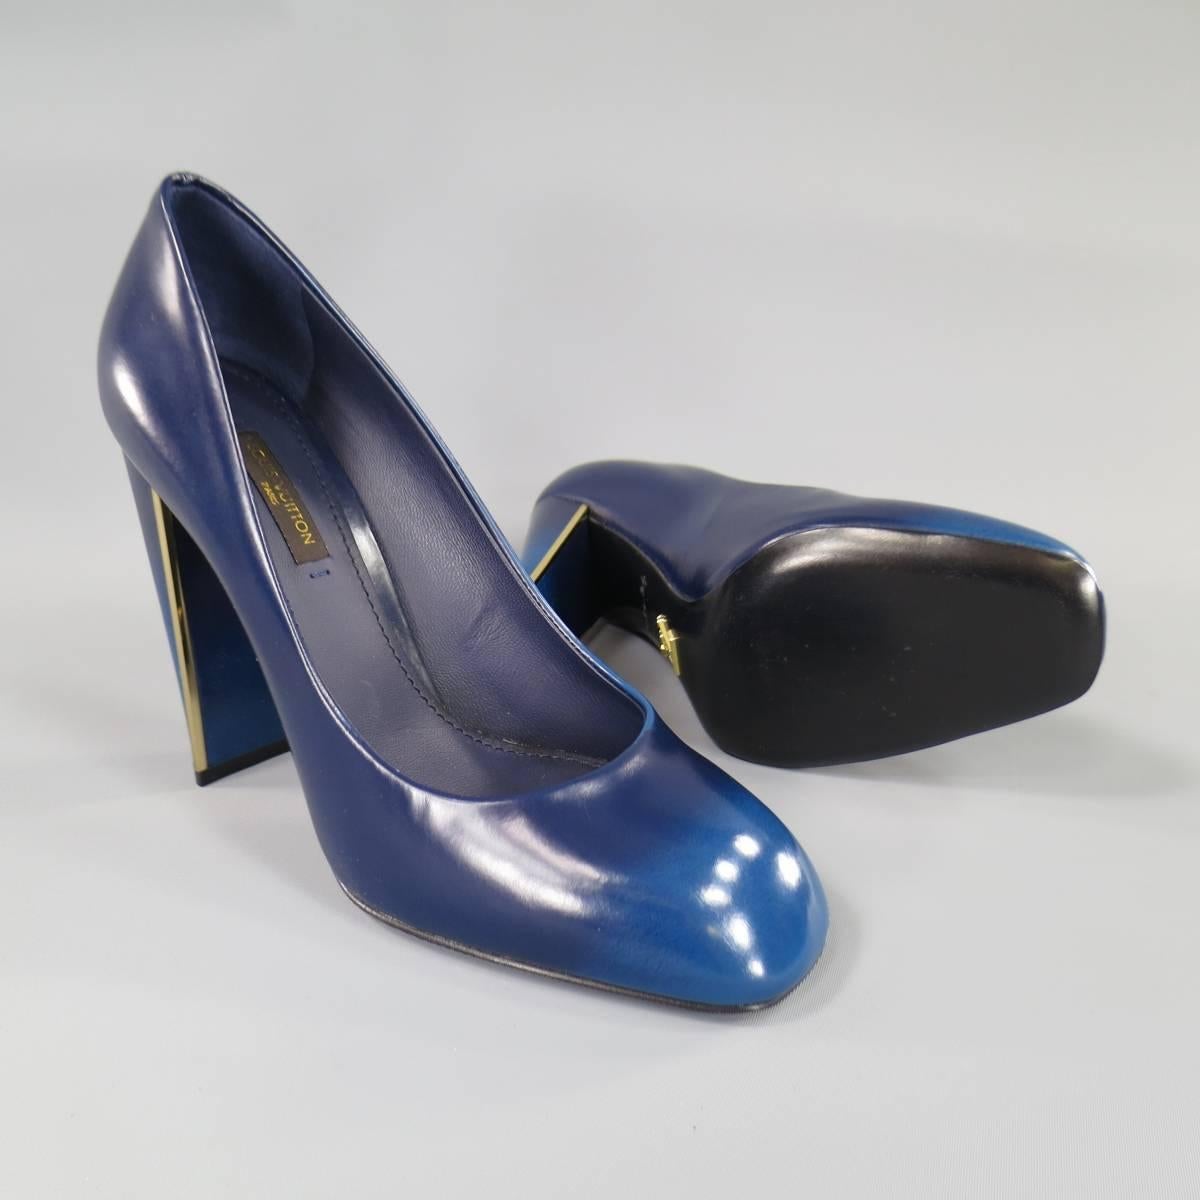 blue ombre heels